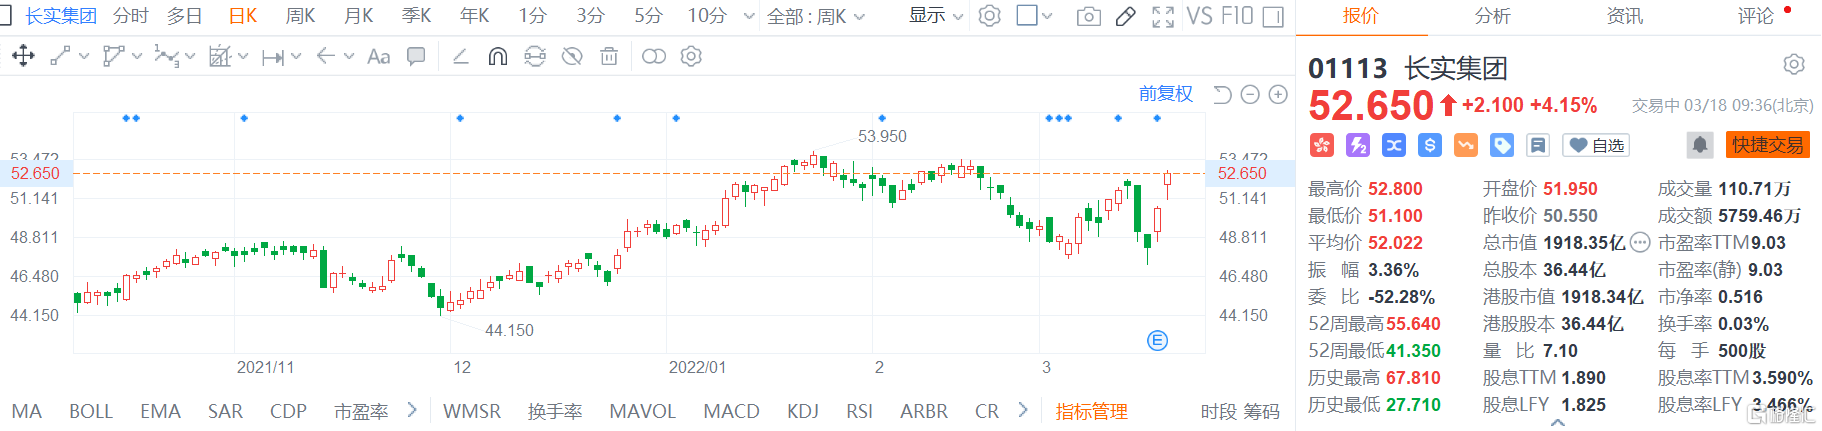 长实集团(1113.HK)高开高走 现报52.65港元涨幅4.15%